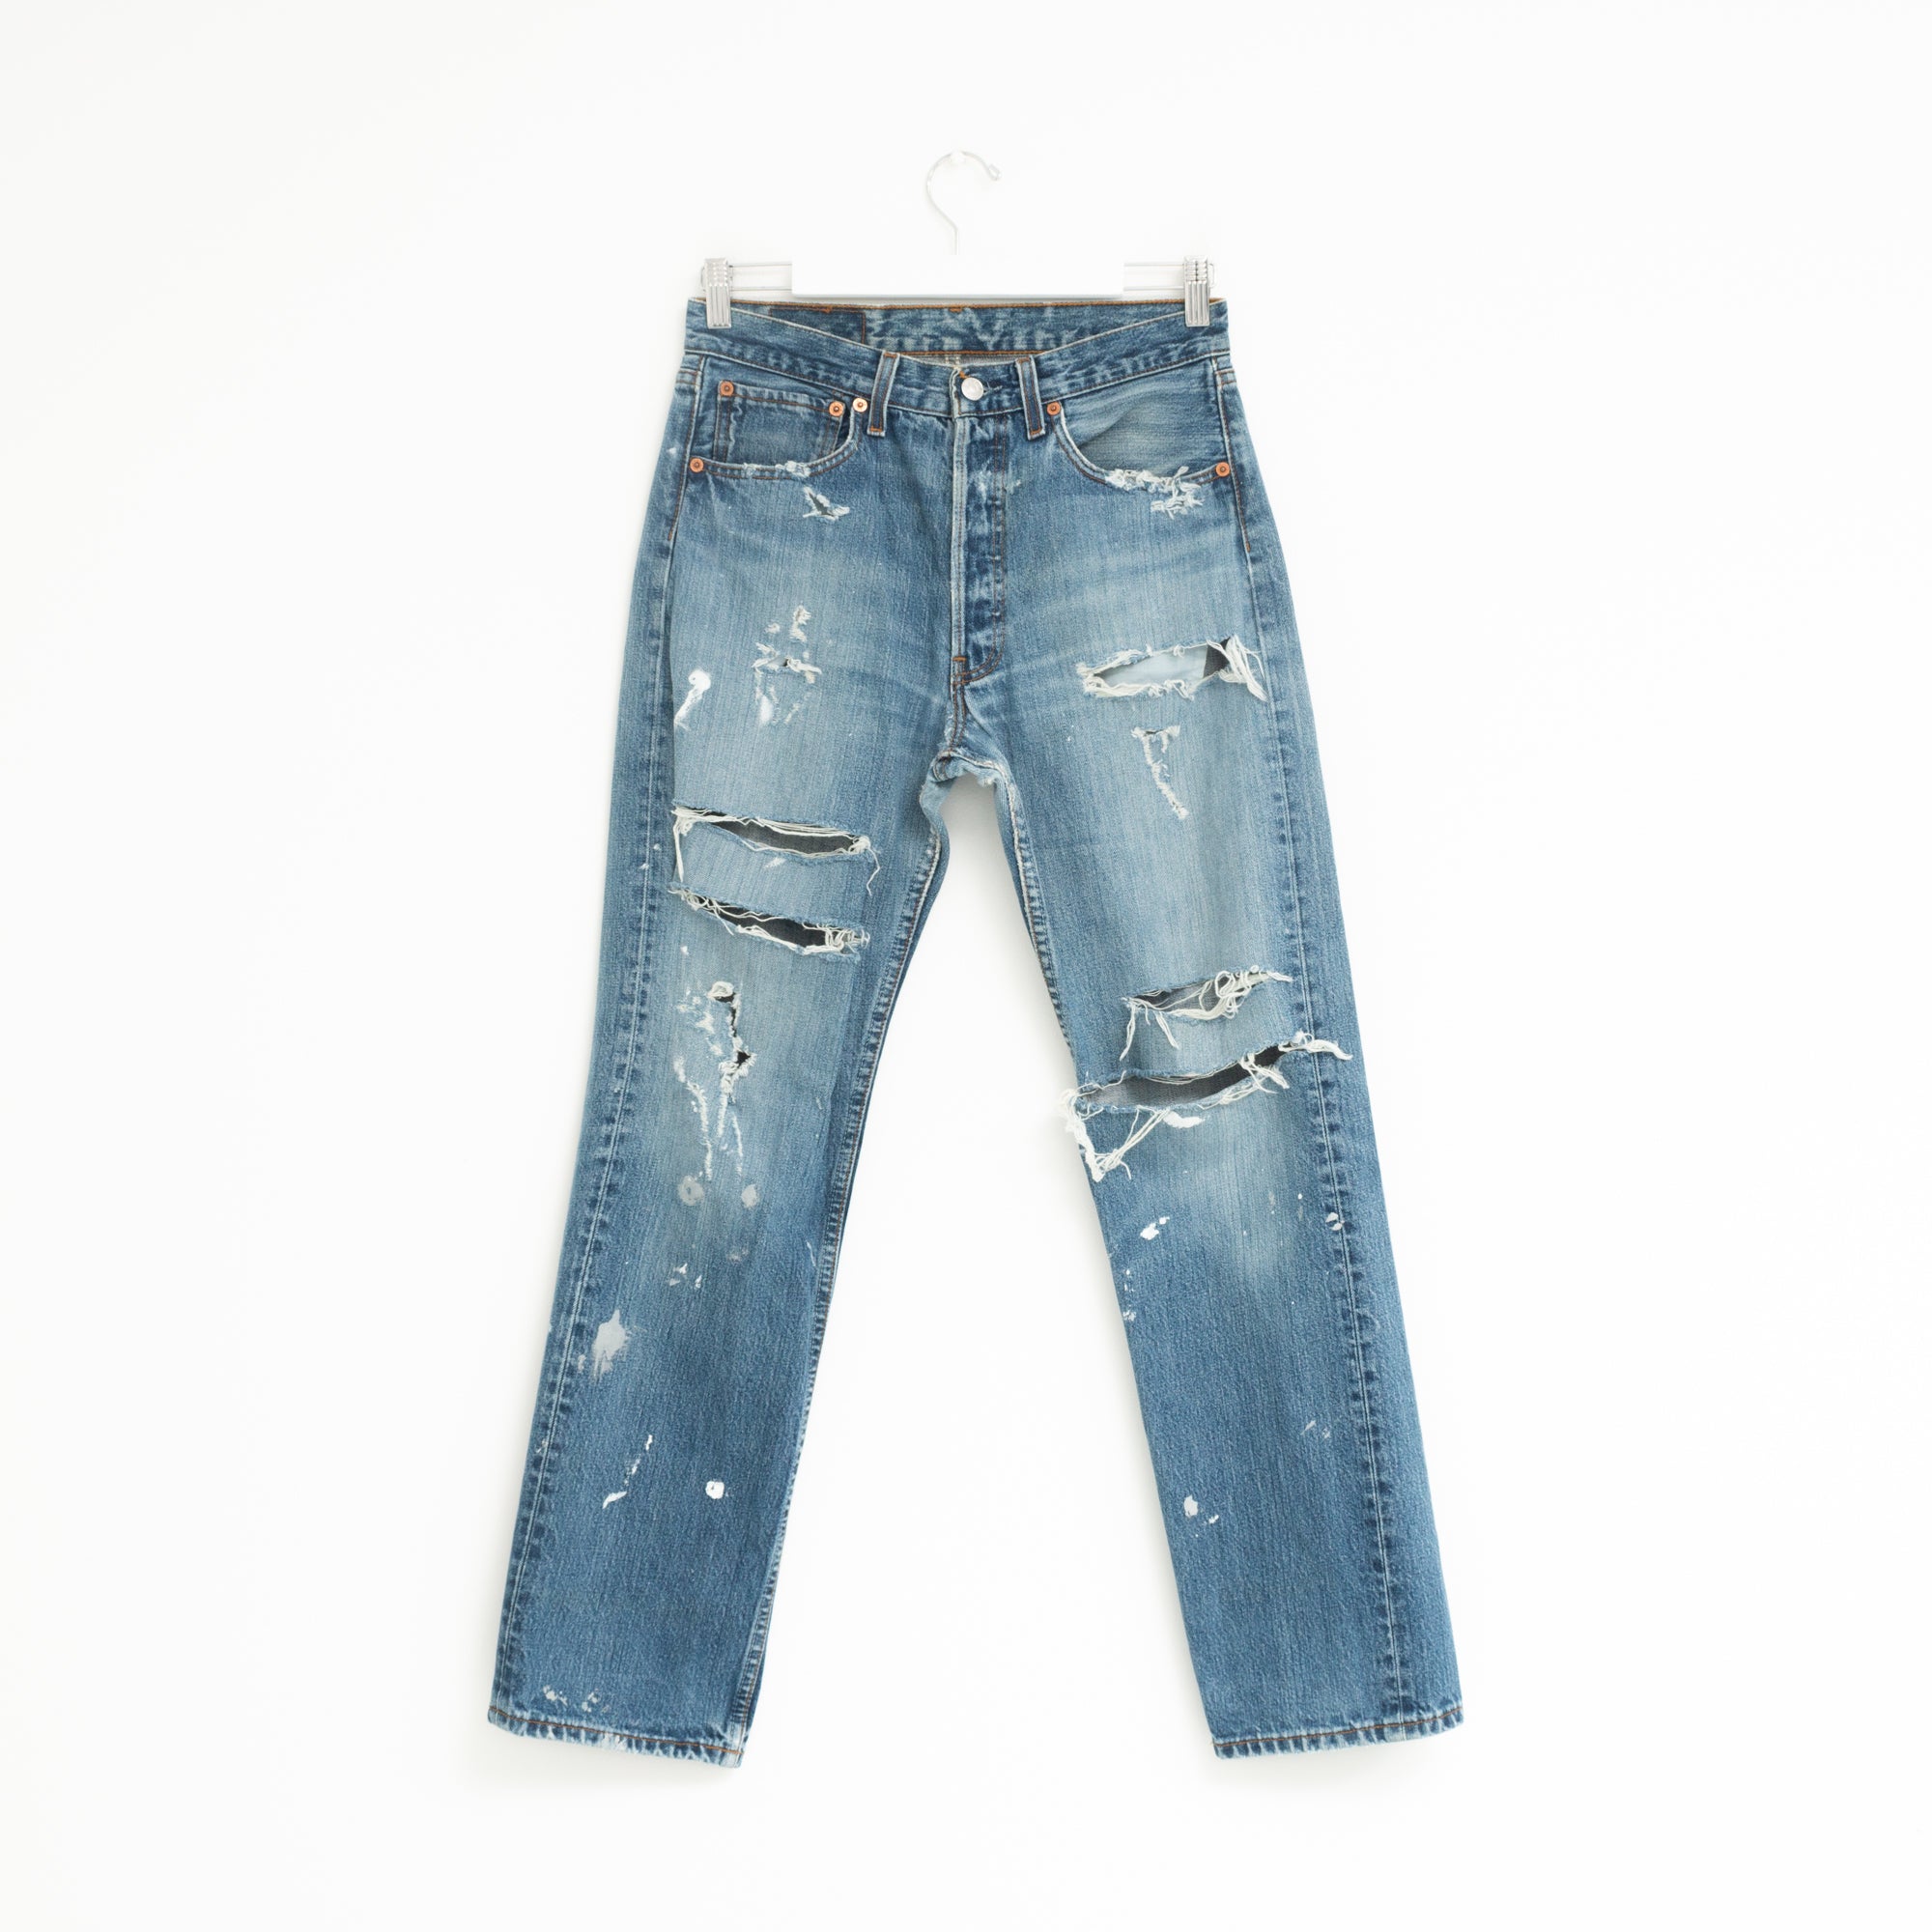 "DISTRESSED" Jeans W29 L30